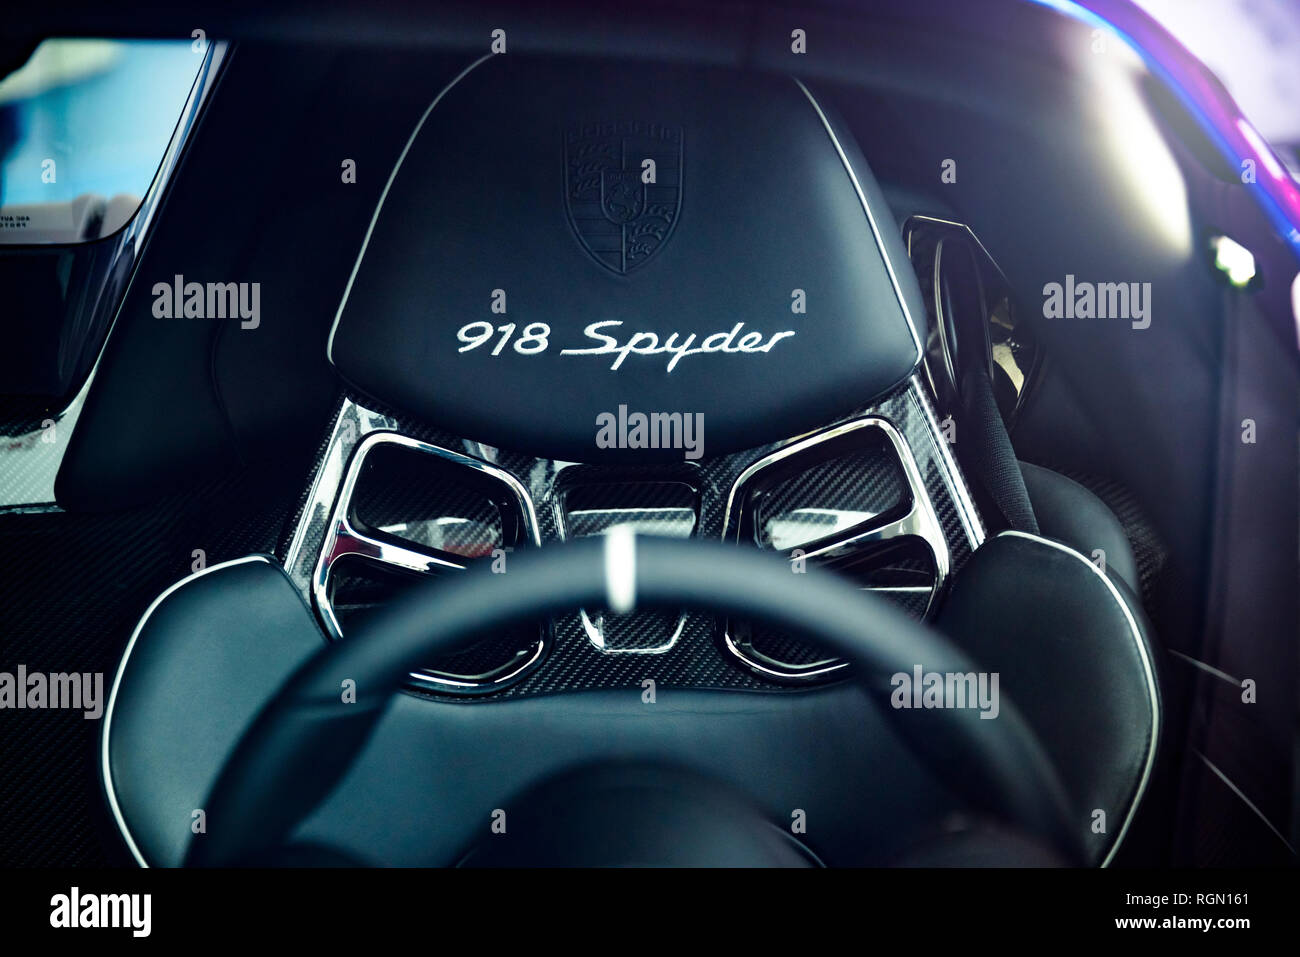 Londres, UK - CIRCA Juin 2014 : la fibre de carbone et du siège en cuir d'une Porsche 918 Spyder. Tourné à travers le pare-brise. Banque D'Images